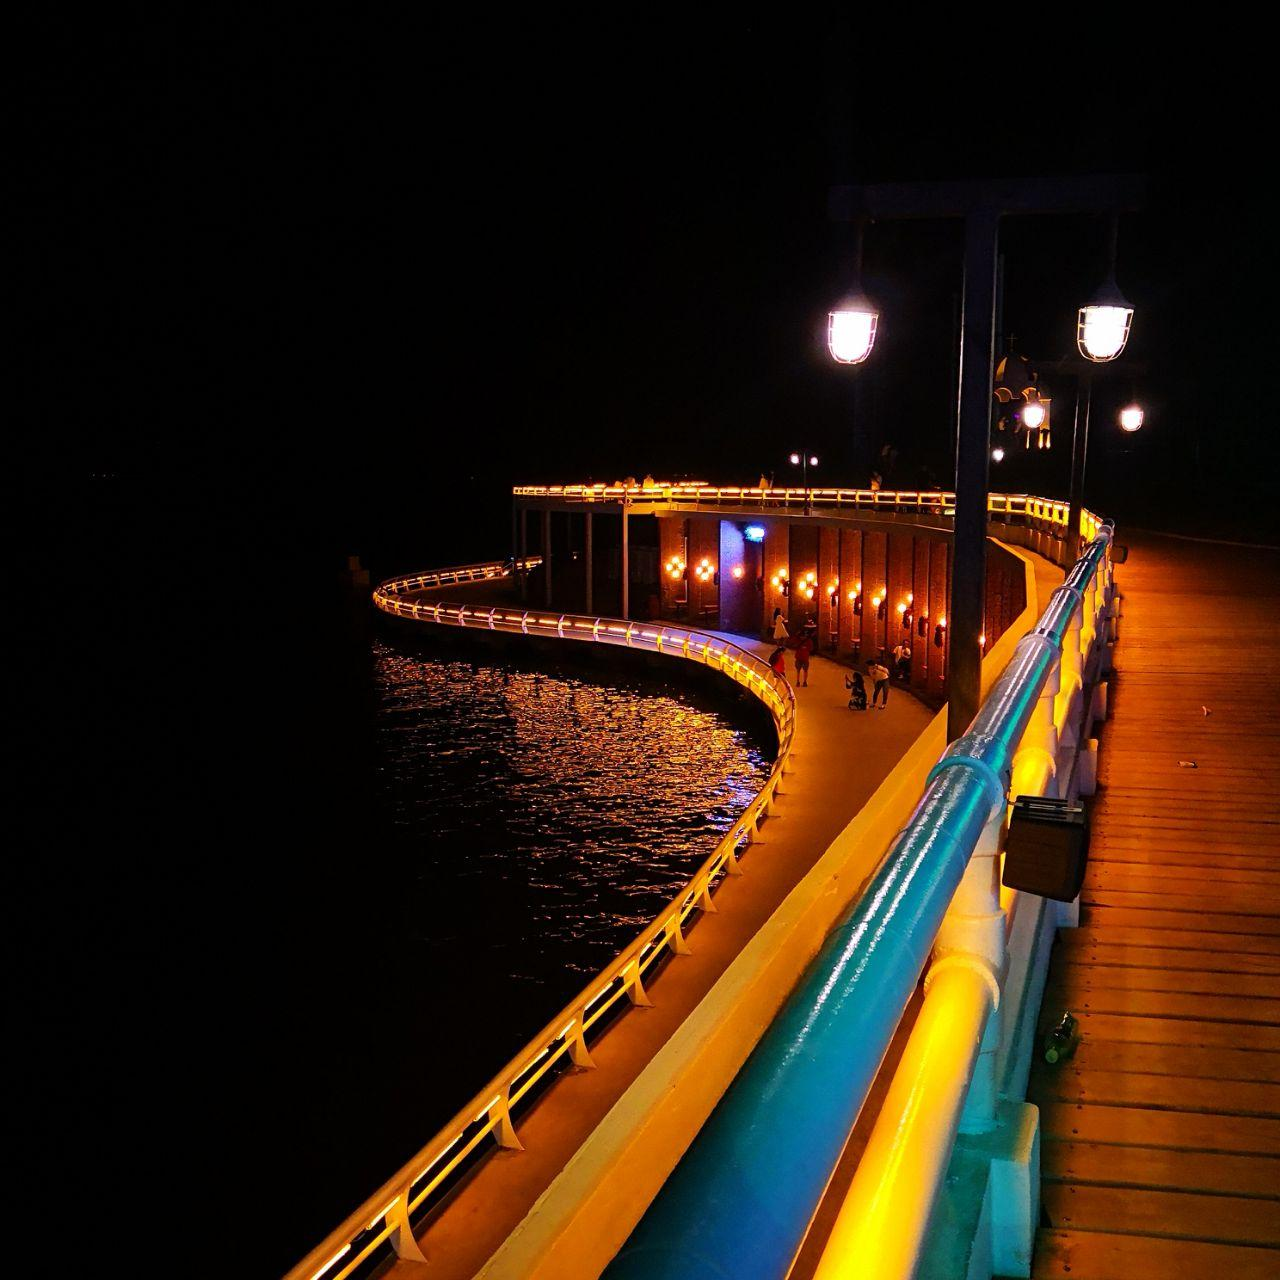 秦皇岛海边夜景图片